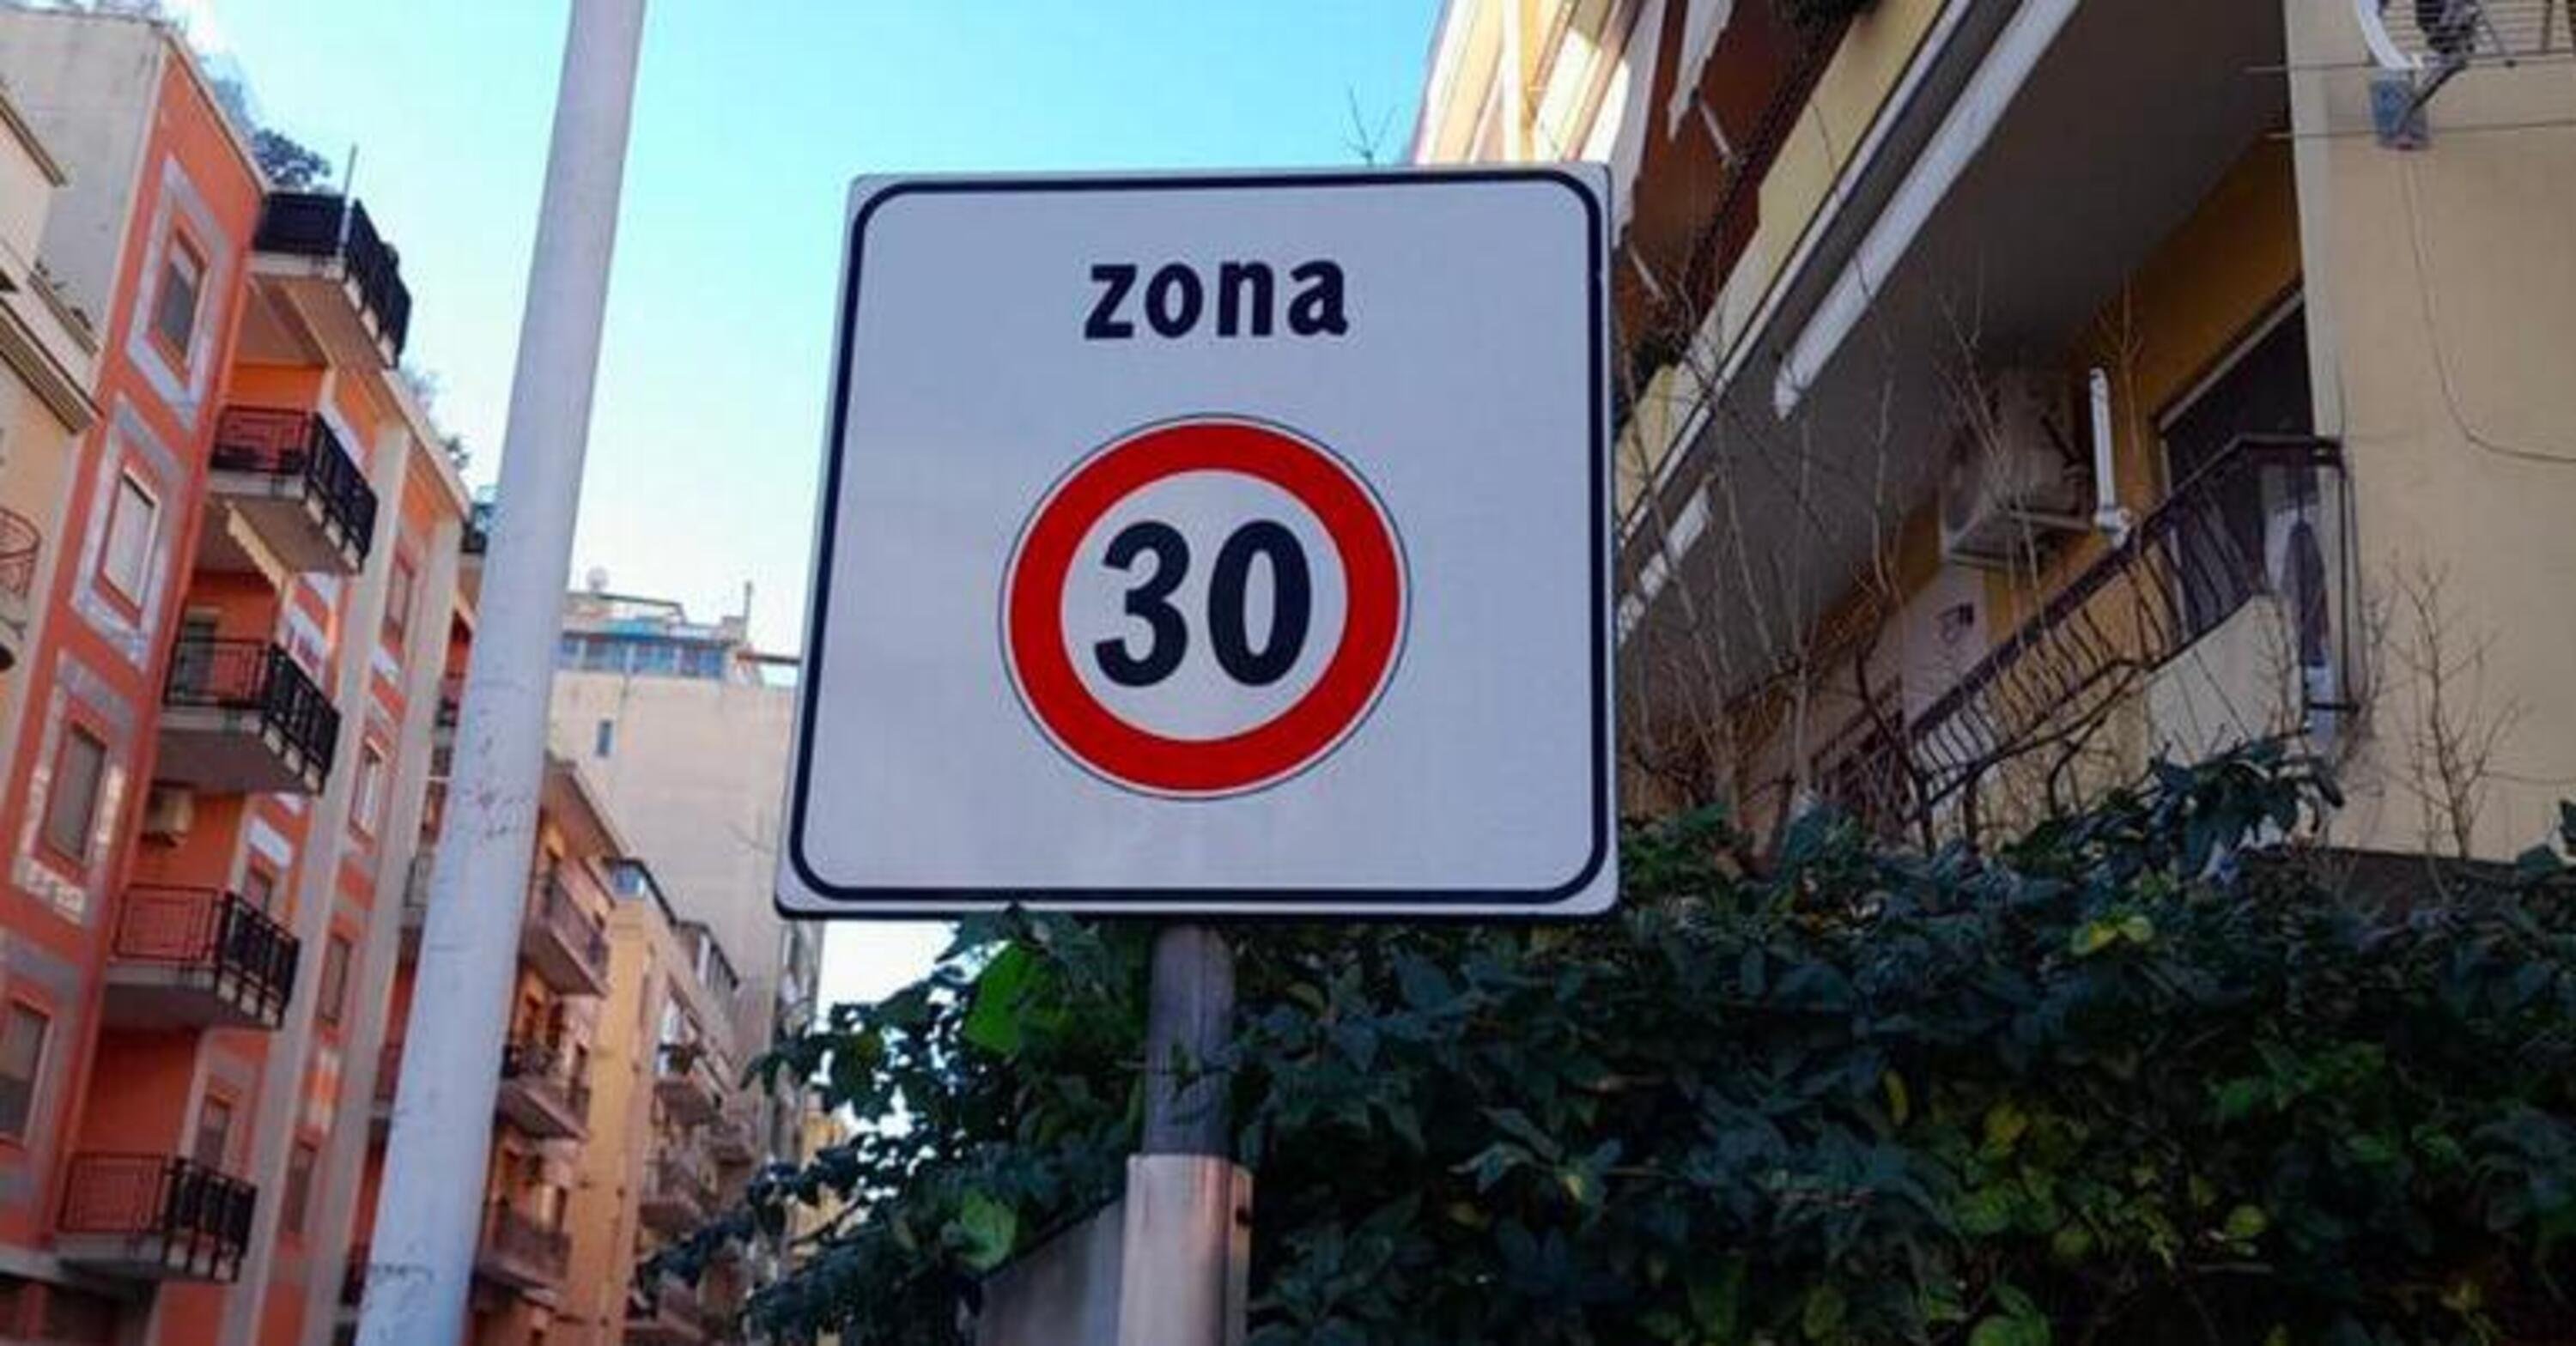 Citt&agrave; 30. Il ministro Salvini firma la direttiva: ecco quando sar&agrave; possibile ridurre il limite a 30 km/h